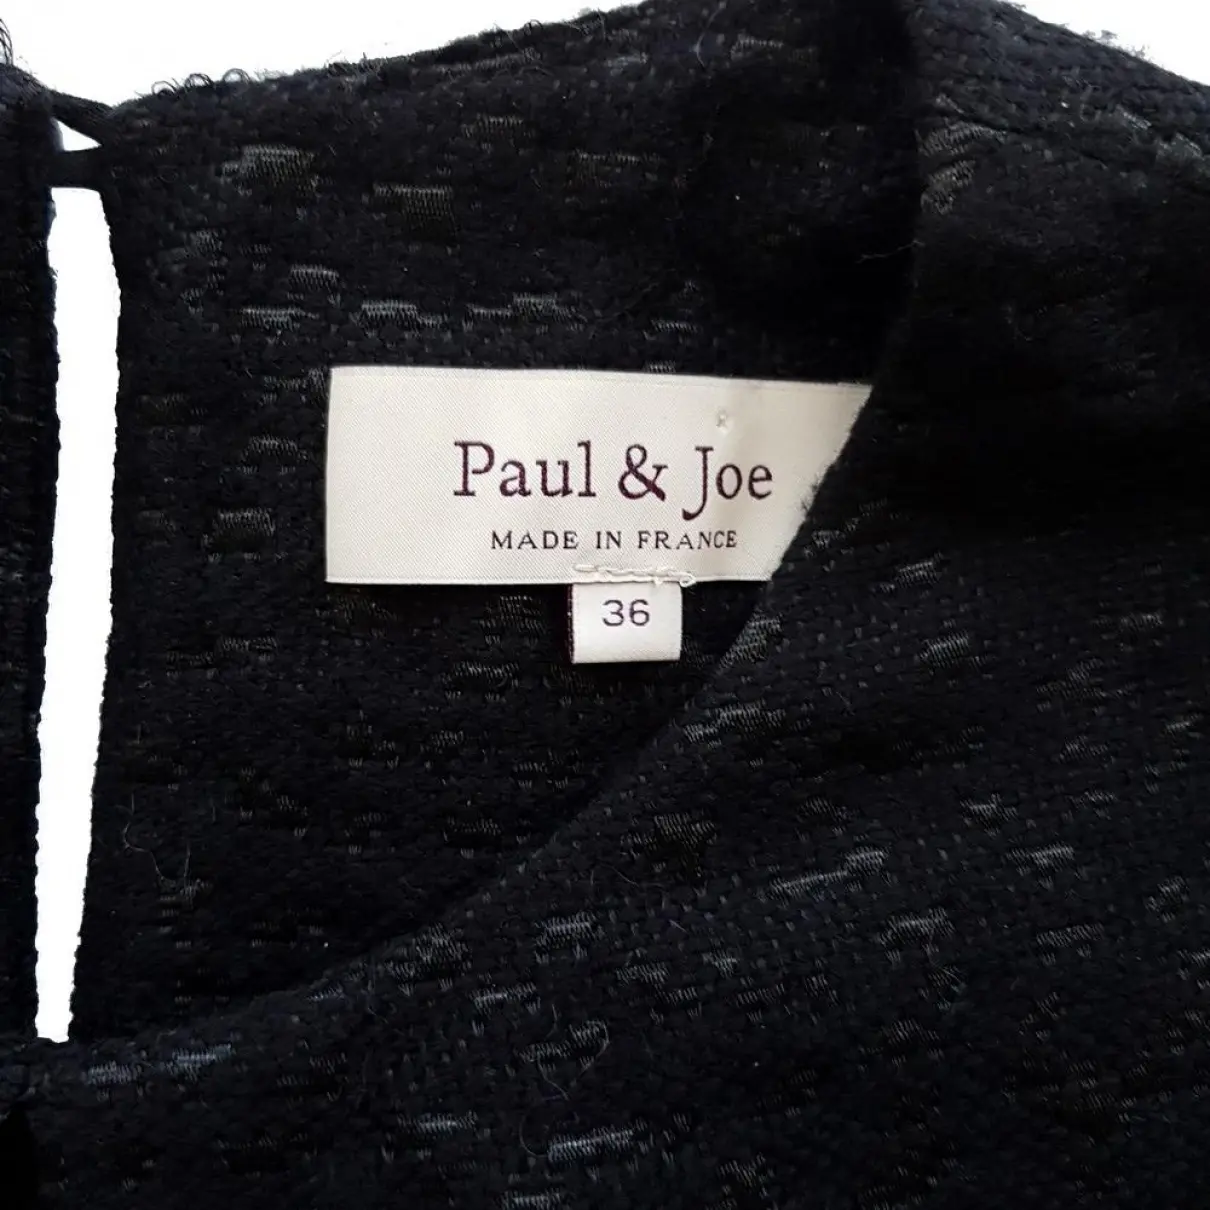 Buy Paul & Joe Dress online